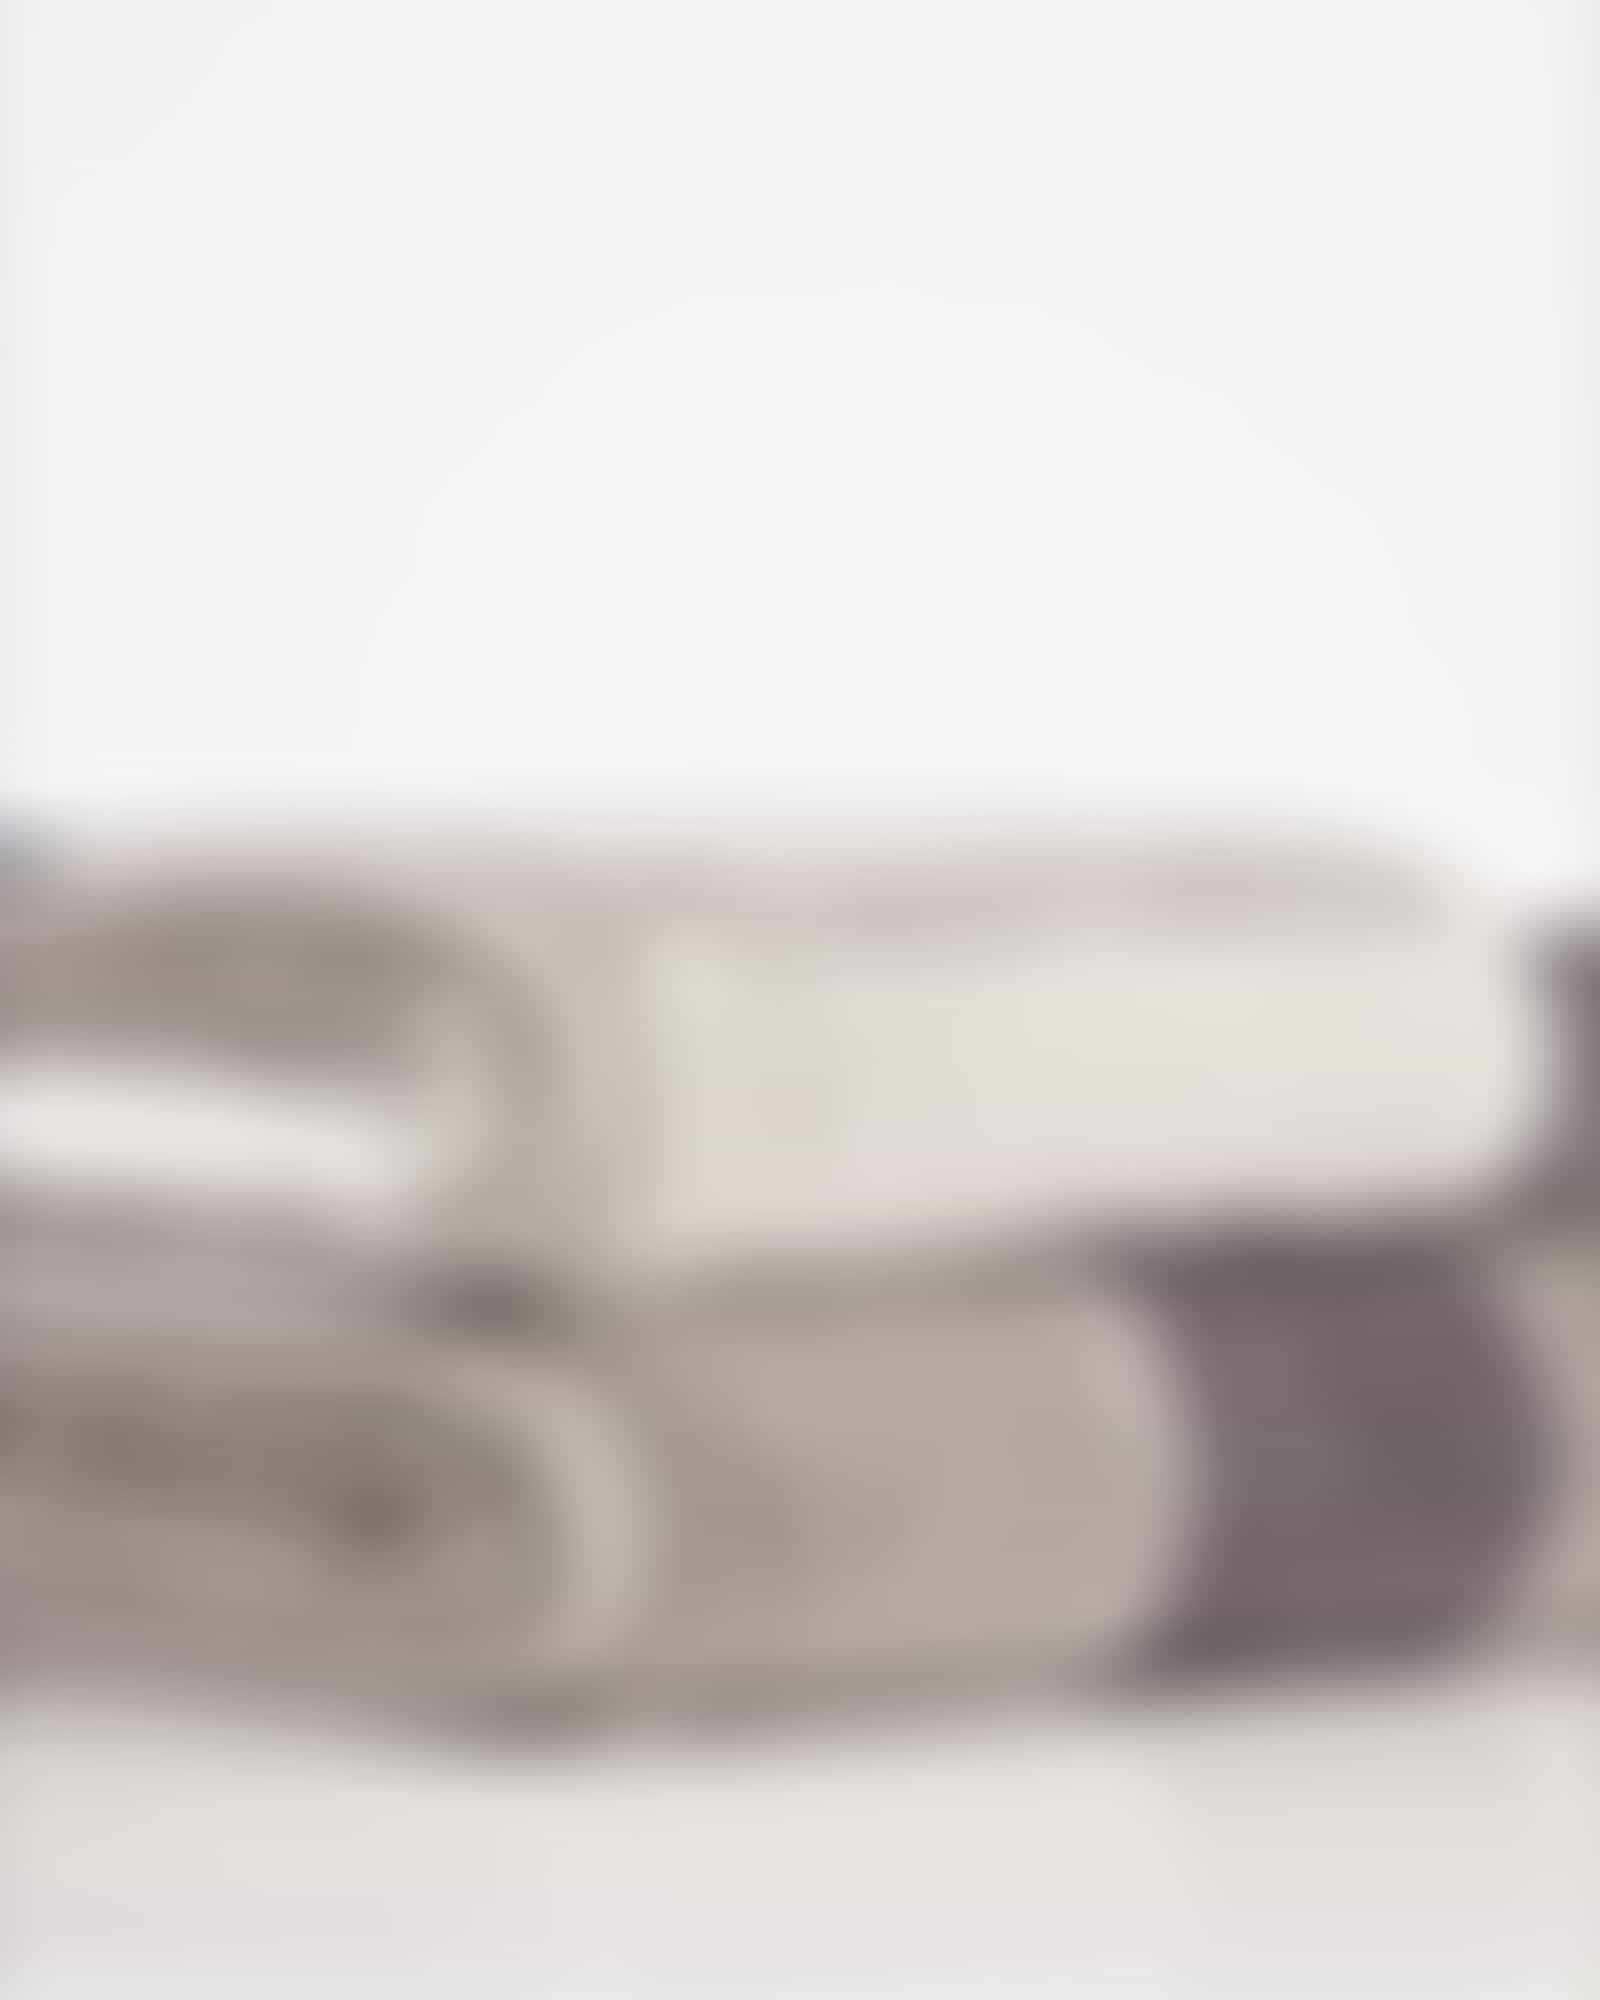 JOOP Shades Stripe 1687 - Farbe: platin - 77 - Waschhandschuh 16x22 cm